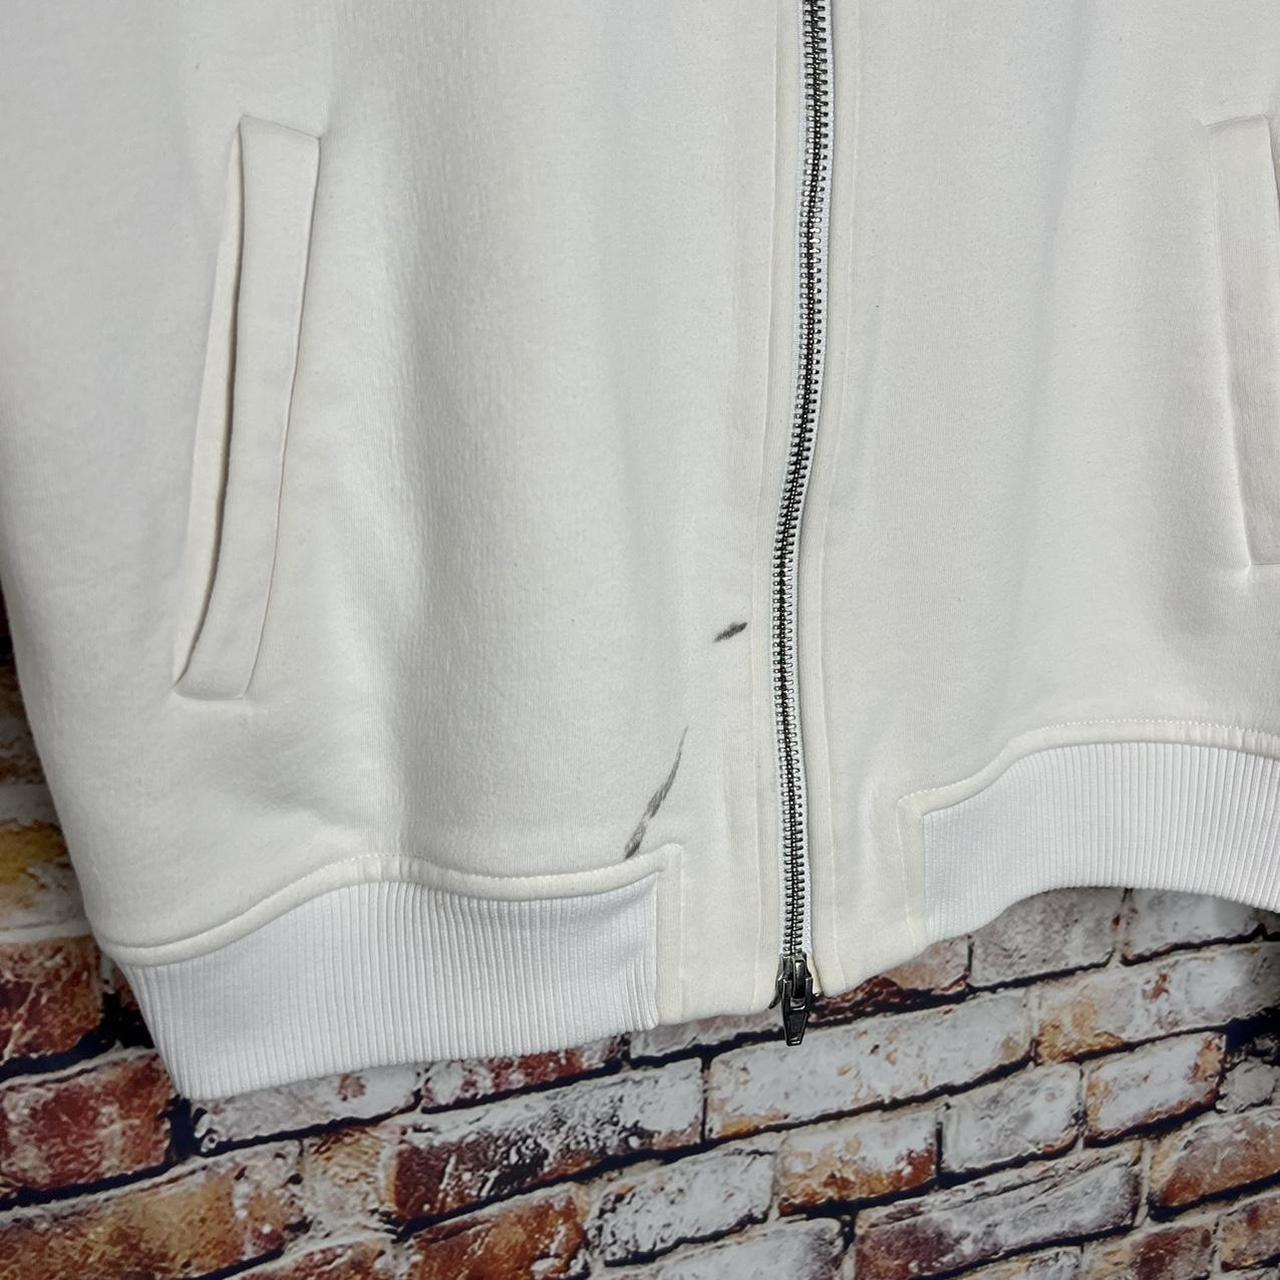 Product Image 2 - Alexander Wang Fleece Bomber Jacket

Size: